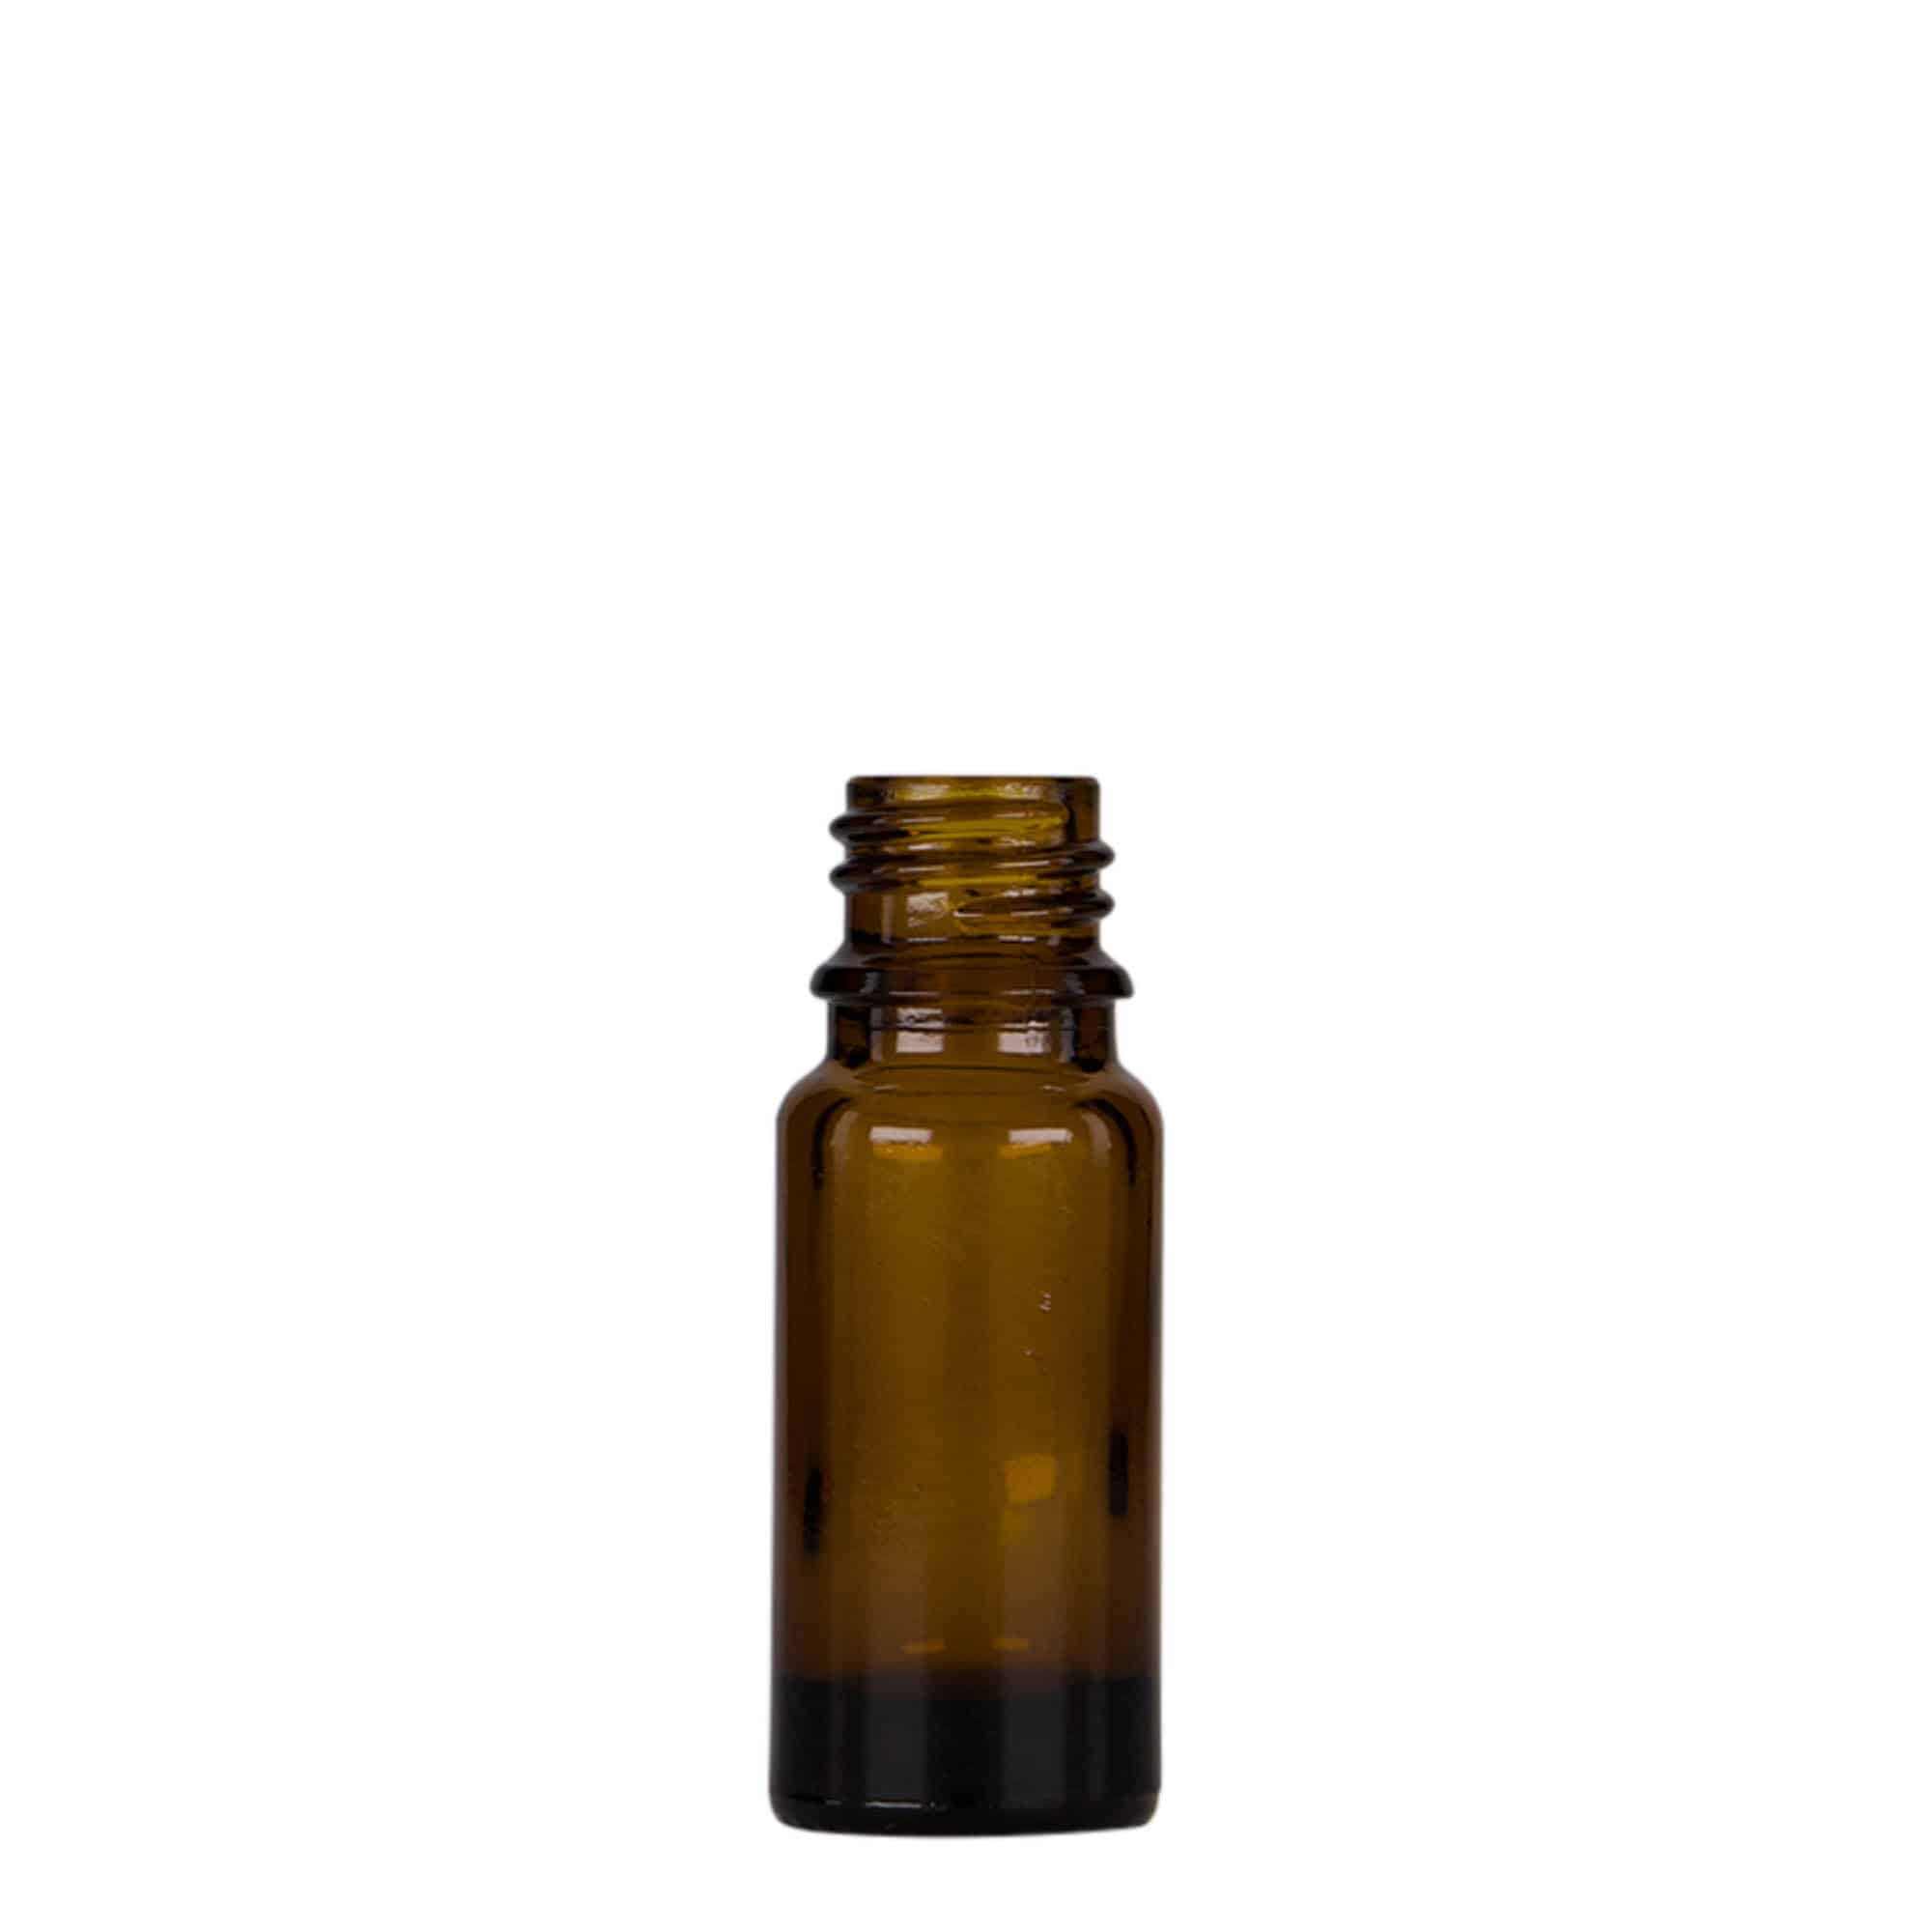 10 ml medicine pipette bottle, glass, brown/black, closure: DIN 18